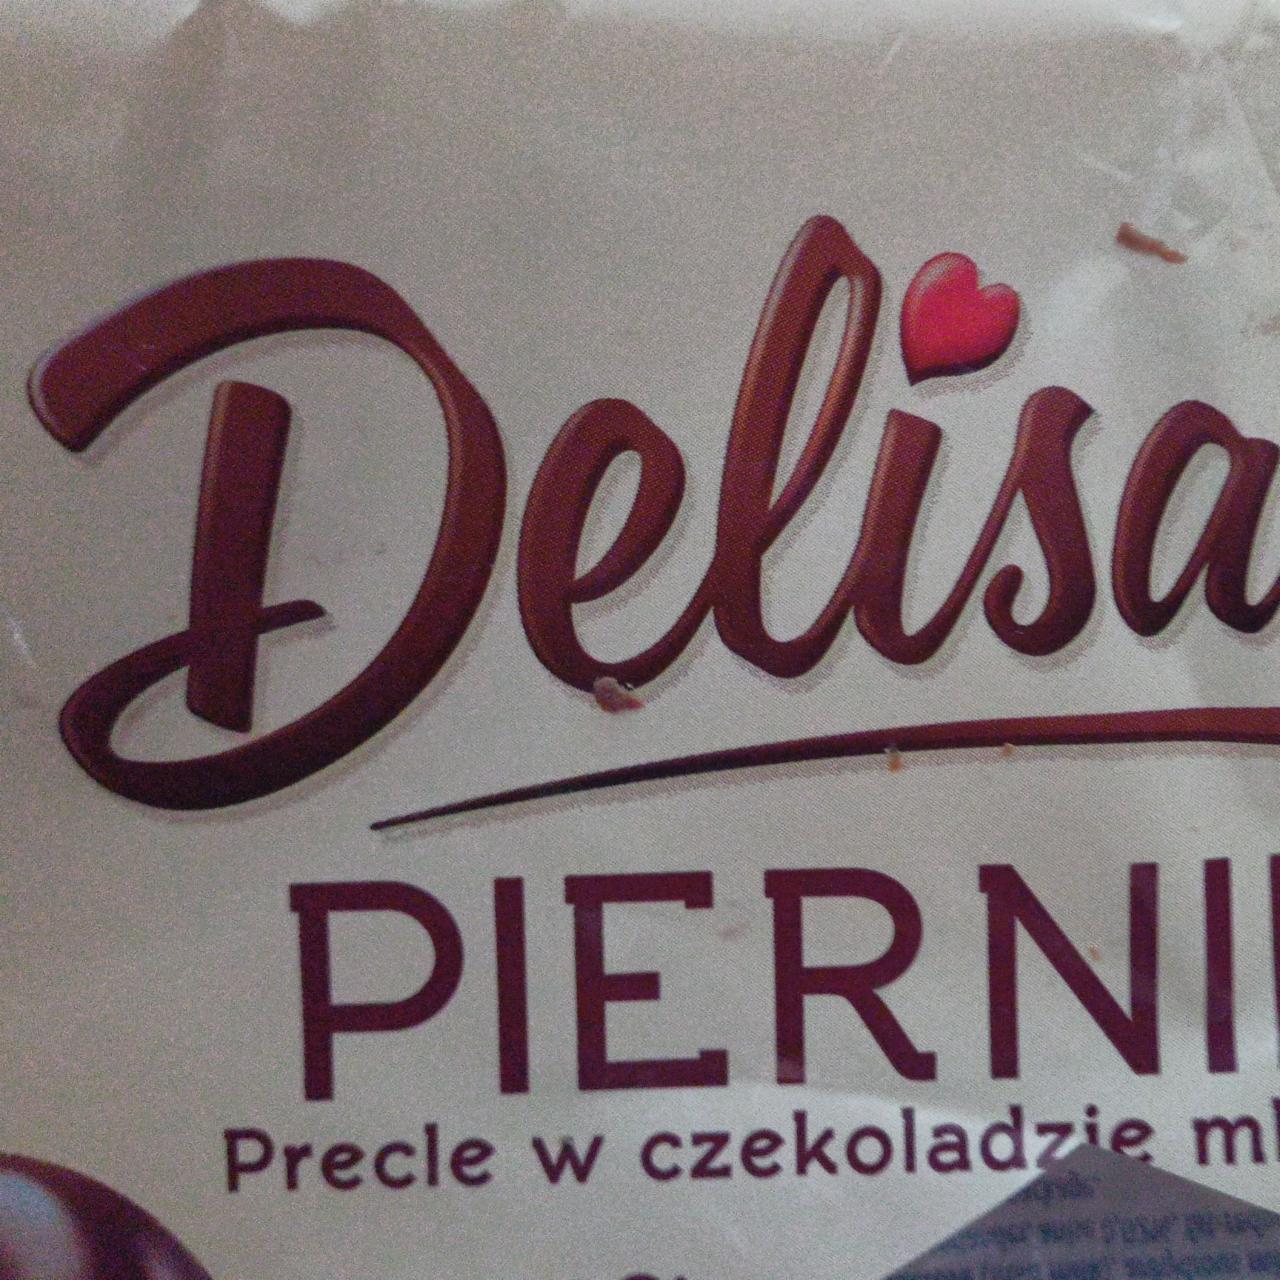 Zdjęcia - Delisia piernik precel w czekoladzie mlecznej